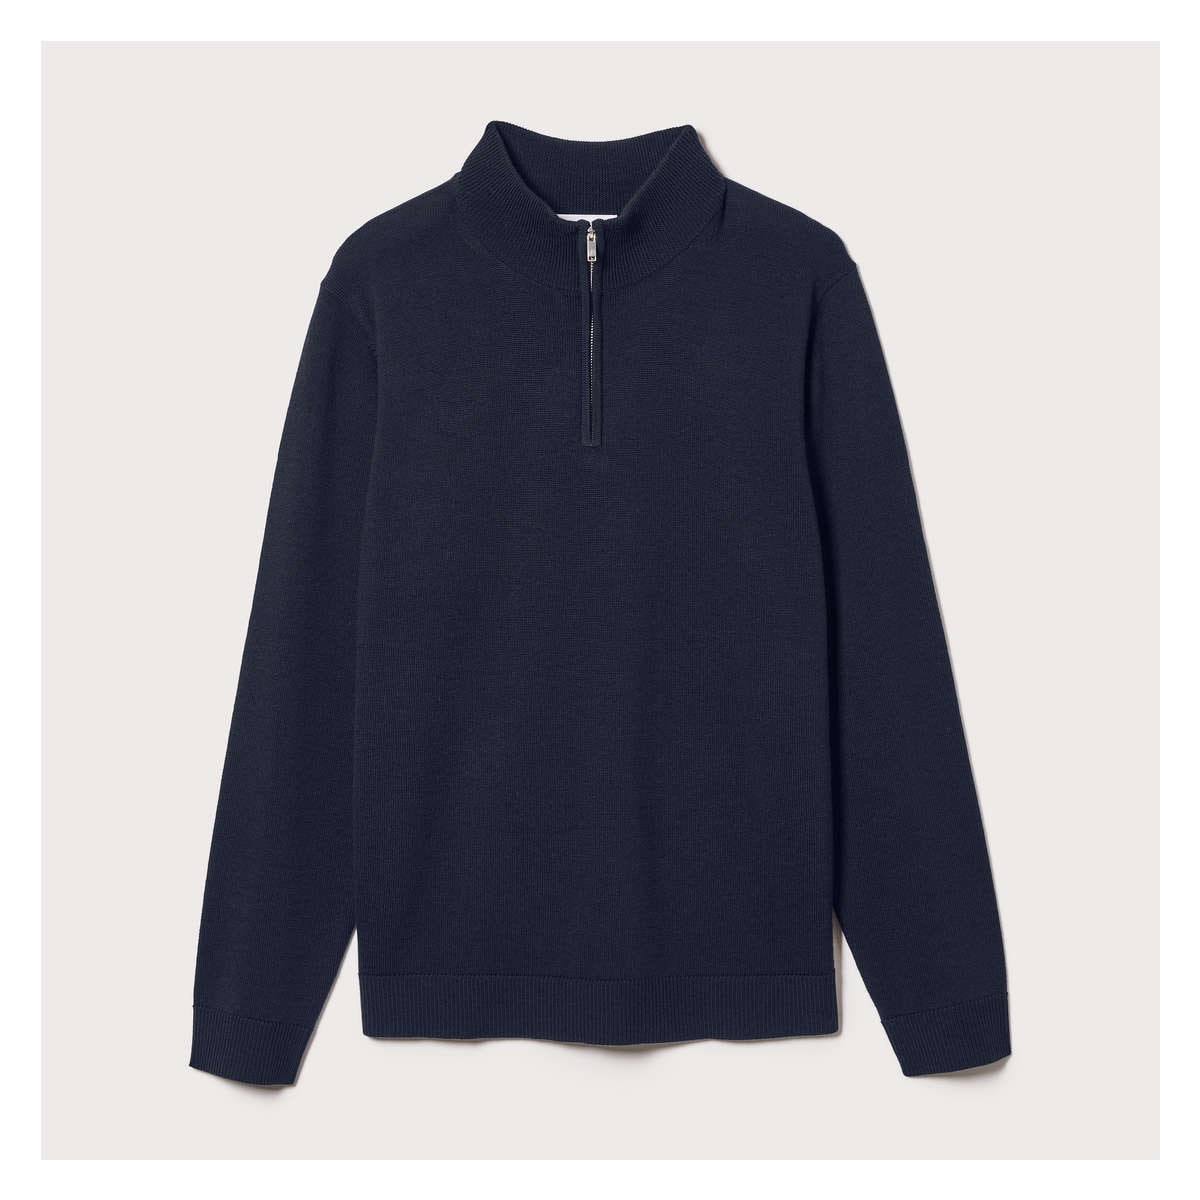 Men's Premium Quarter-Zip Merino Sweater in Dark Navy from Joe Fresh